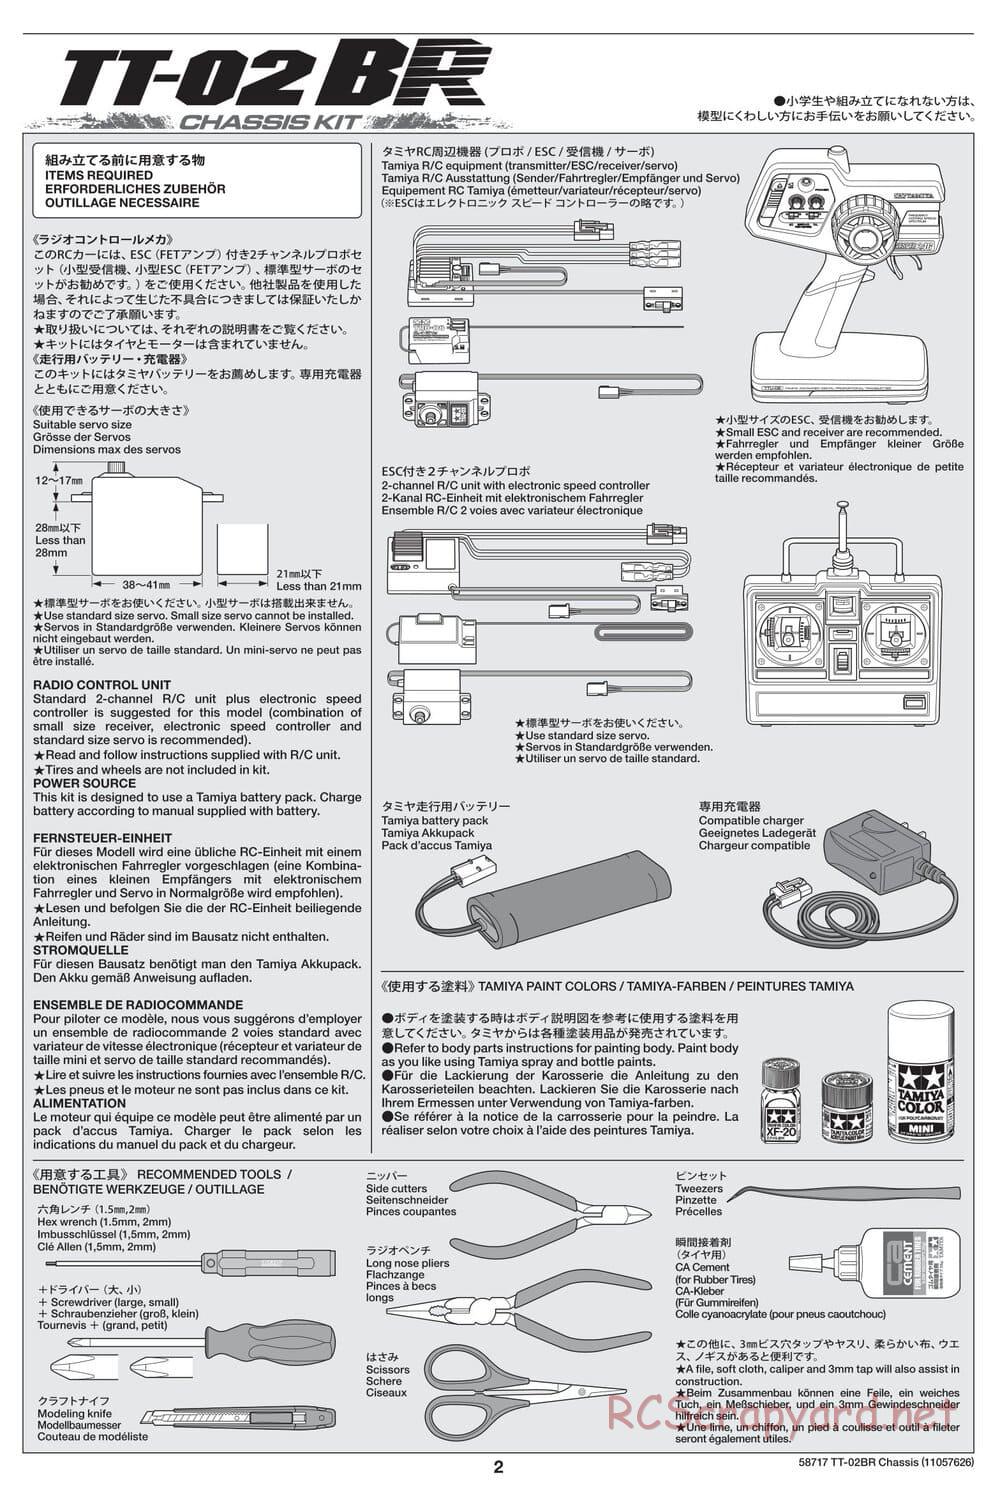 Tamiya - TT-02BR Chassis - Manual - Page 2